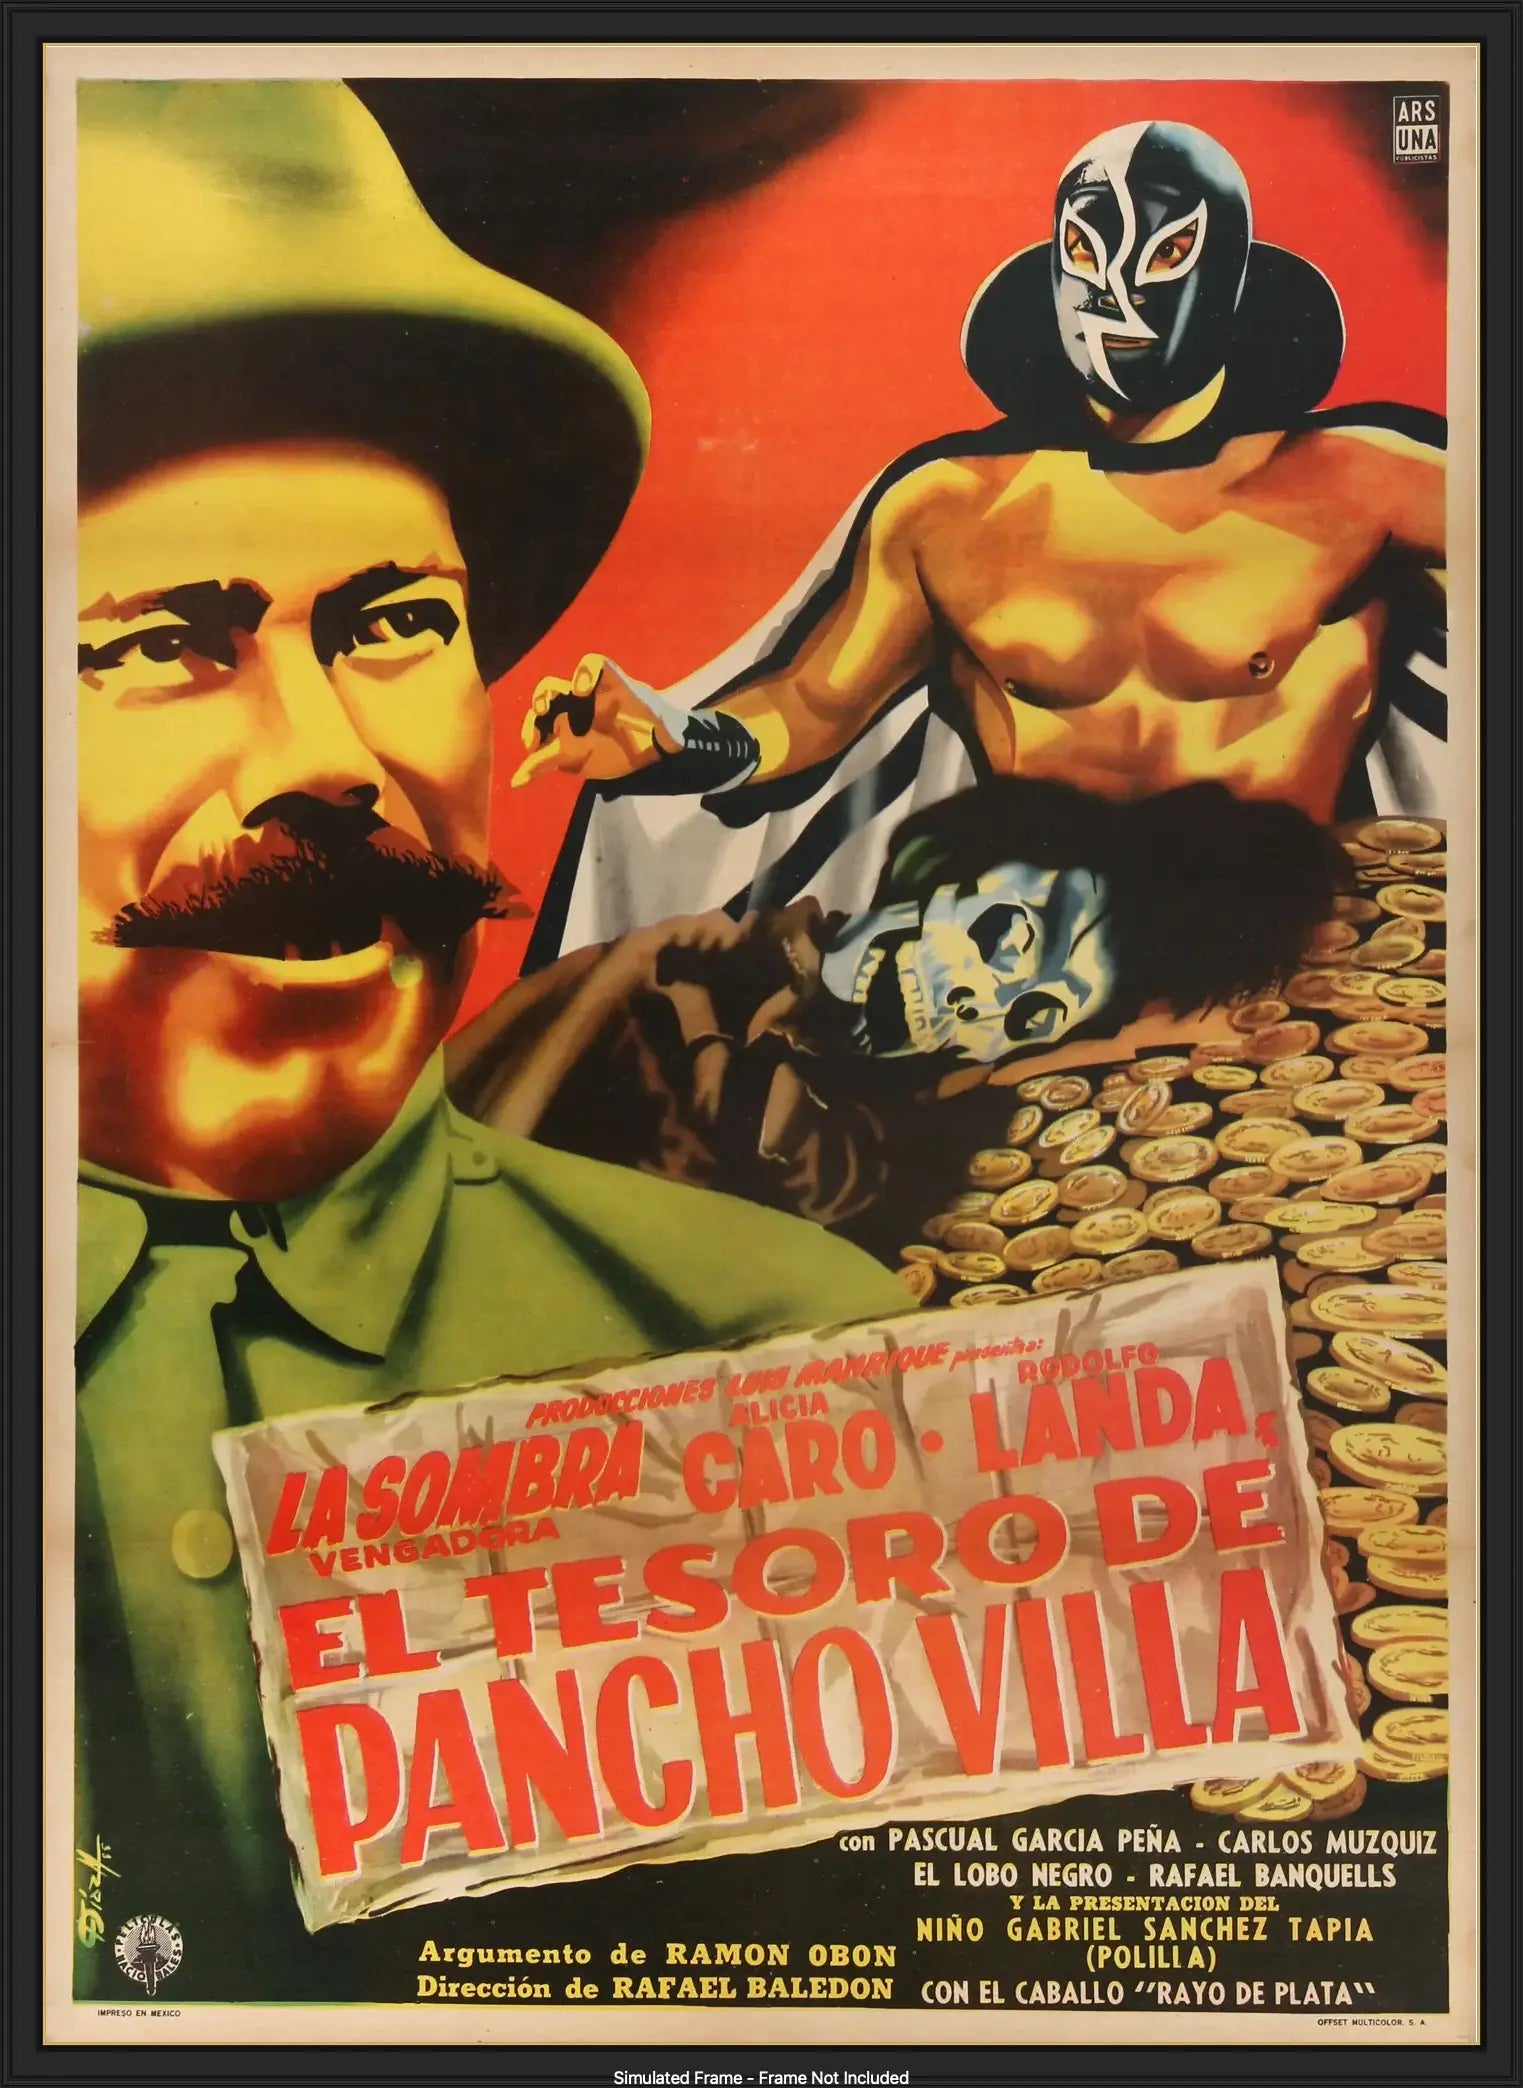 El Tesoro de Pancho Villa (1957) original movie poster for sale at Original Film Art